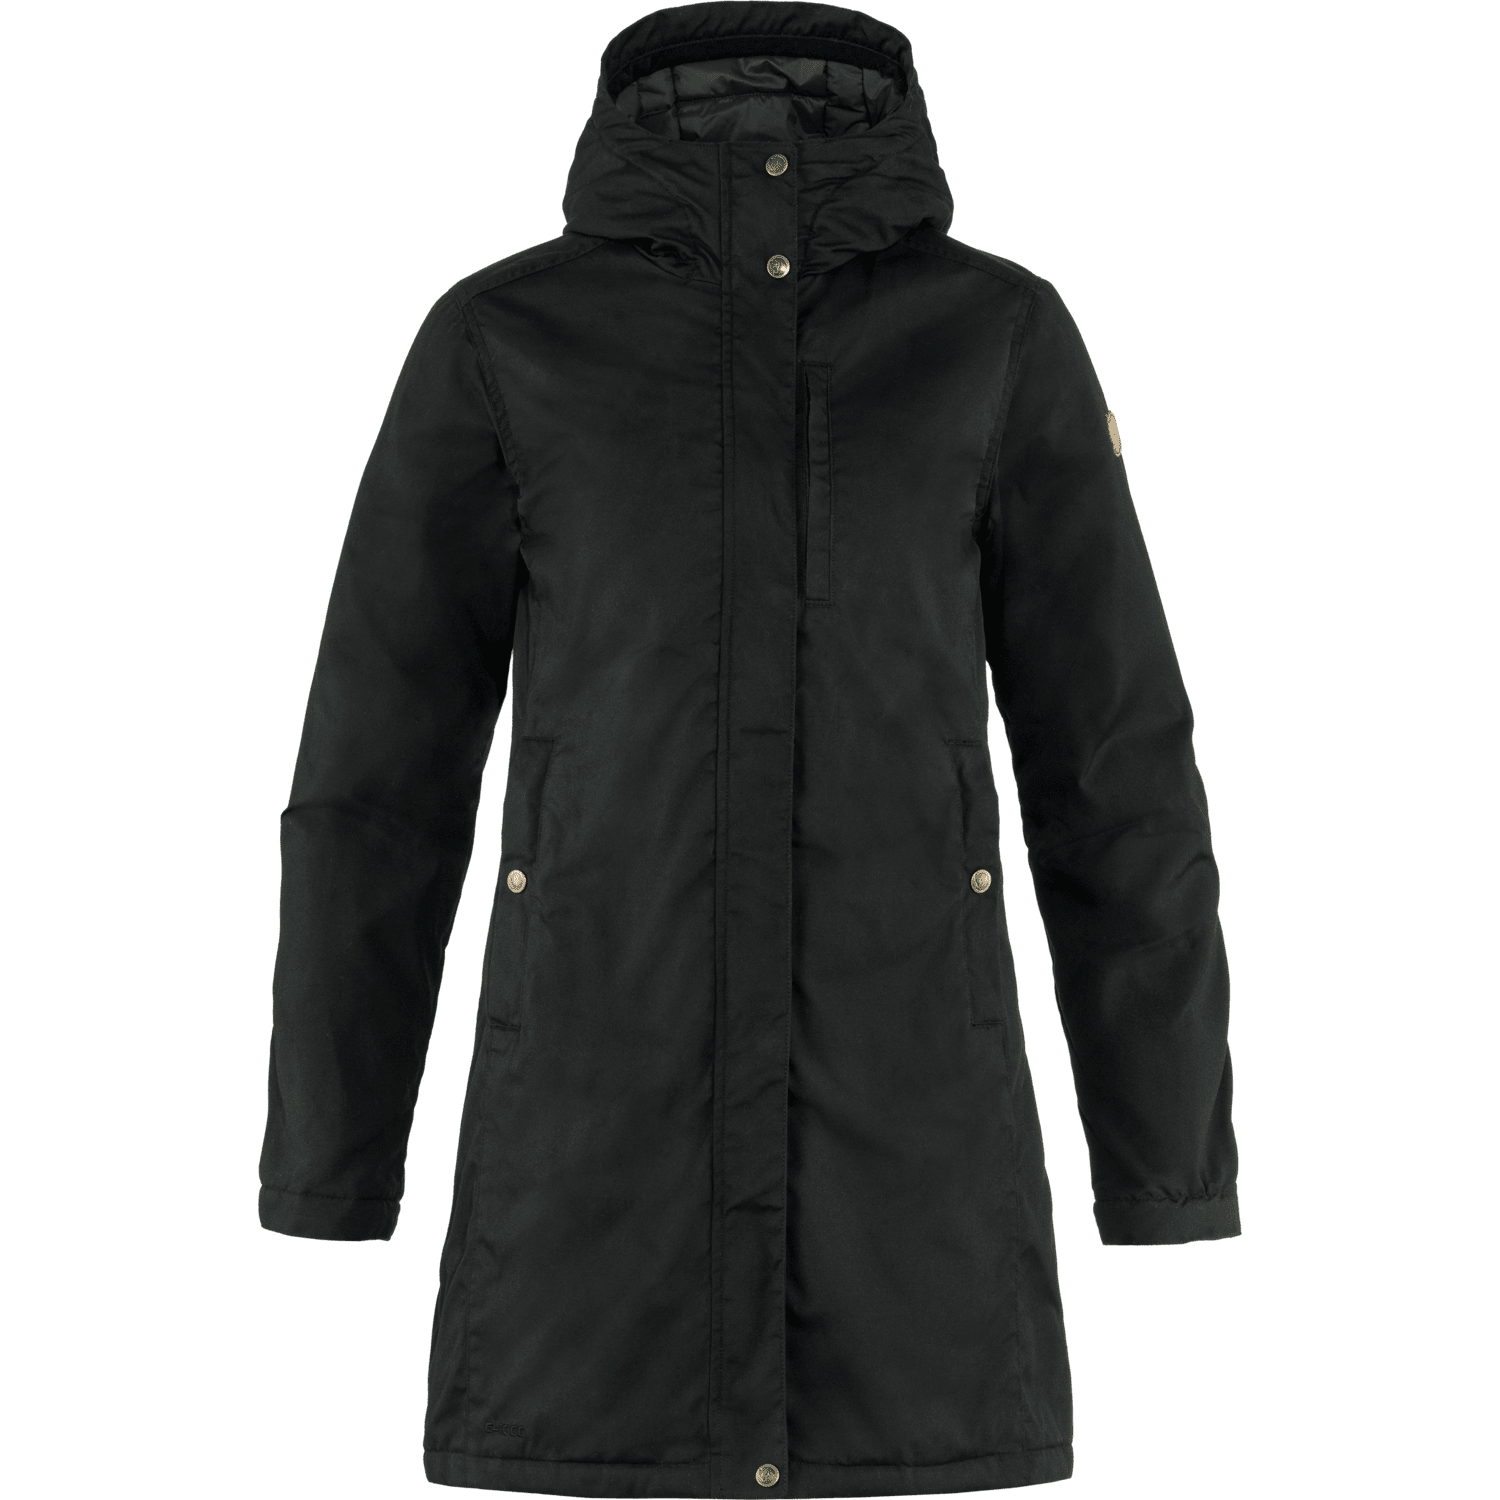 Fjällräven W's Kiruna Padded Parka - Recycled Polyester & Organic Cotton Black Jacket